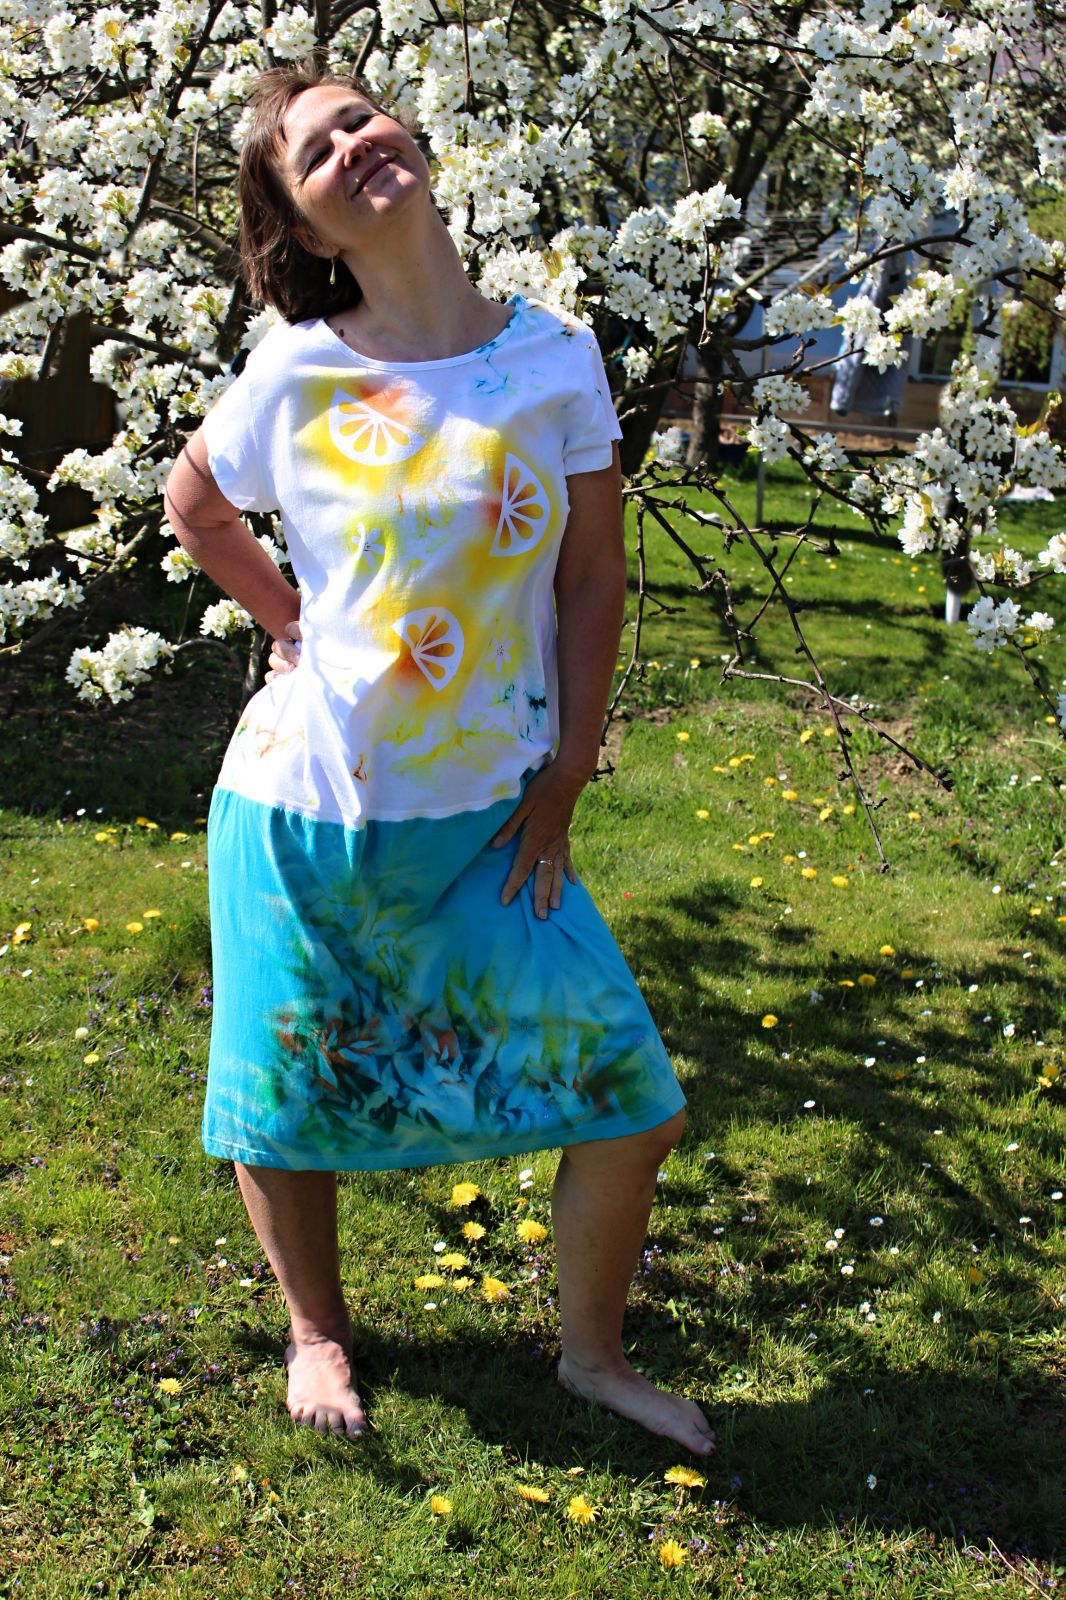 Malované batikované šaty - Citronáda, z autorské dílny z Olomouce - velikost 2XL Batitex - malovaná, batikovaná trička, šaty, mikiny, šátky, šály, kravaty